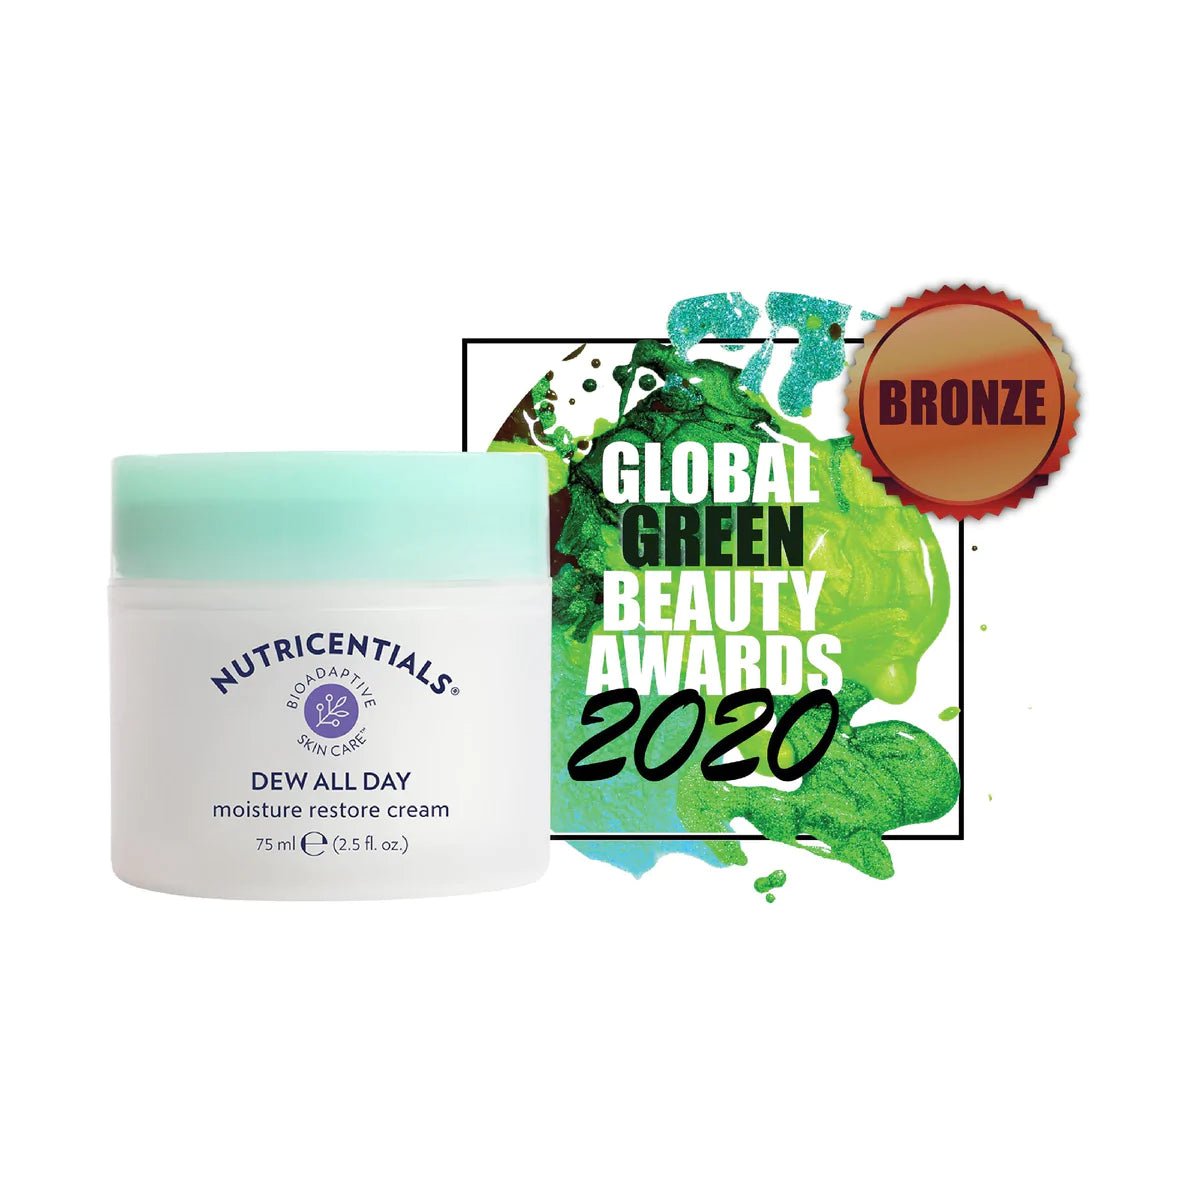 La crema facial Dew All Day de Nu Skin tiene el Glbbal Verde Beauty Awards ganado...